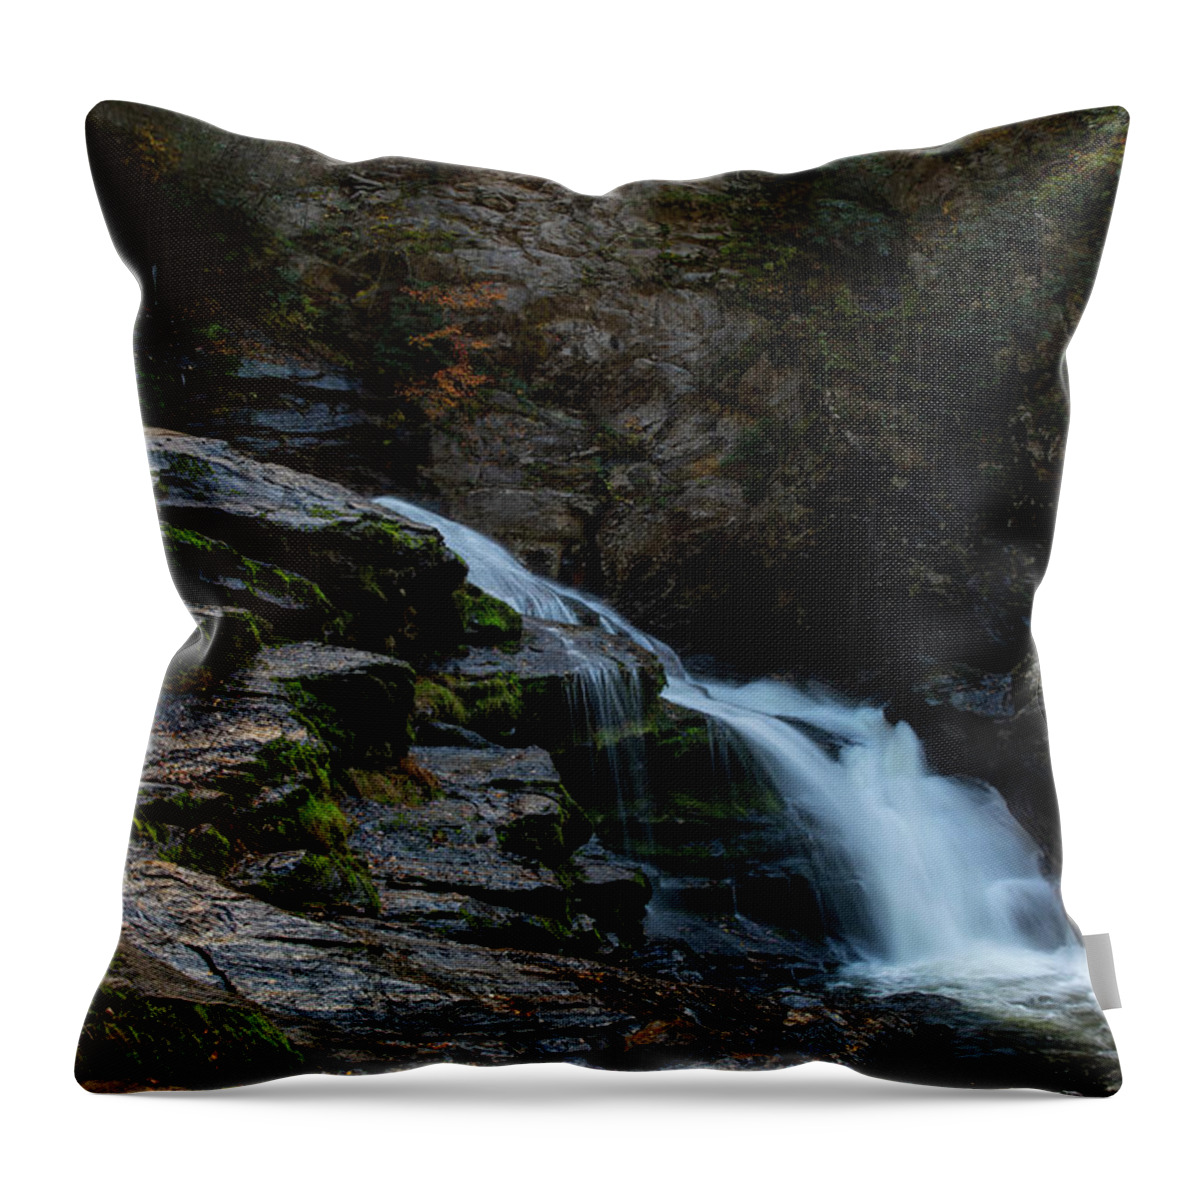 Cullasaja Falls Throw Pillow featuring the photograph Cullasaja Falls Long Exposure by Dan Sproul